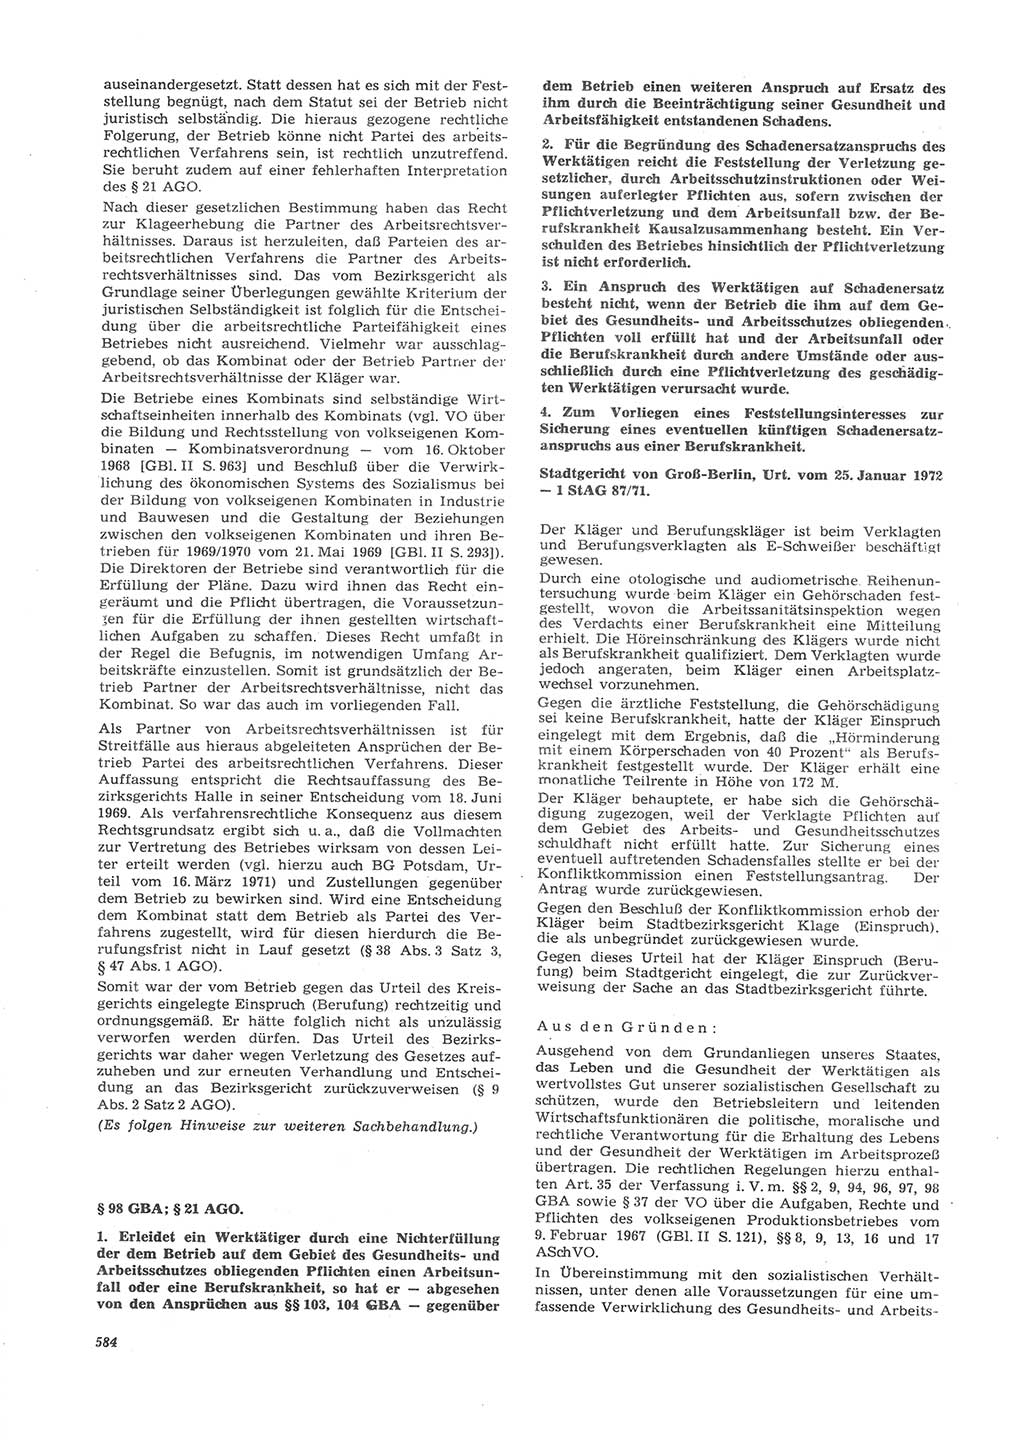 Neue Justiz (NJ), Zeitschrift für Recht und Rechtswissenschaft [Deutsche Demokratische Republik (DDR)], 26. Jahrgang 1972, Seite 584 (NJ DDR 1972, S. 584)